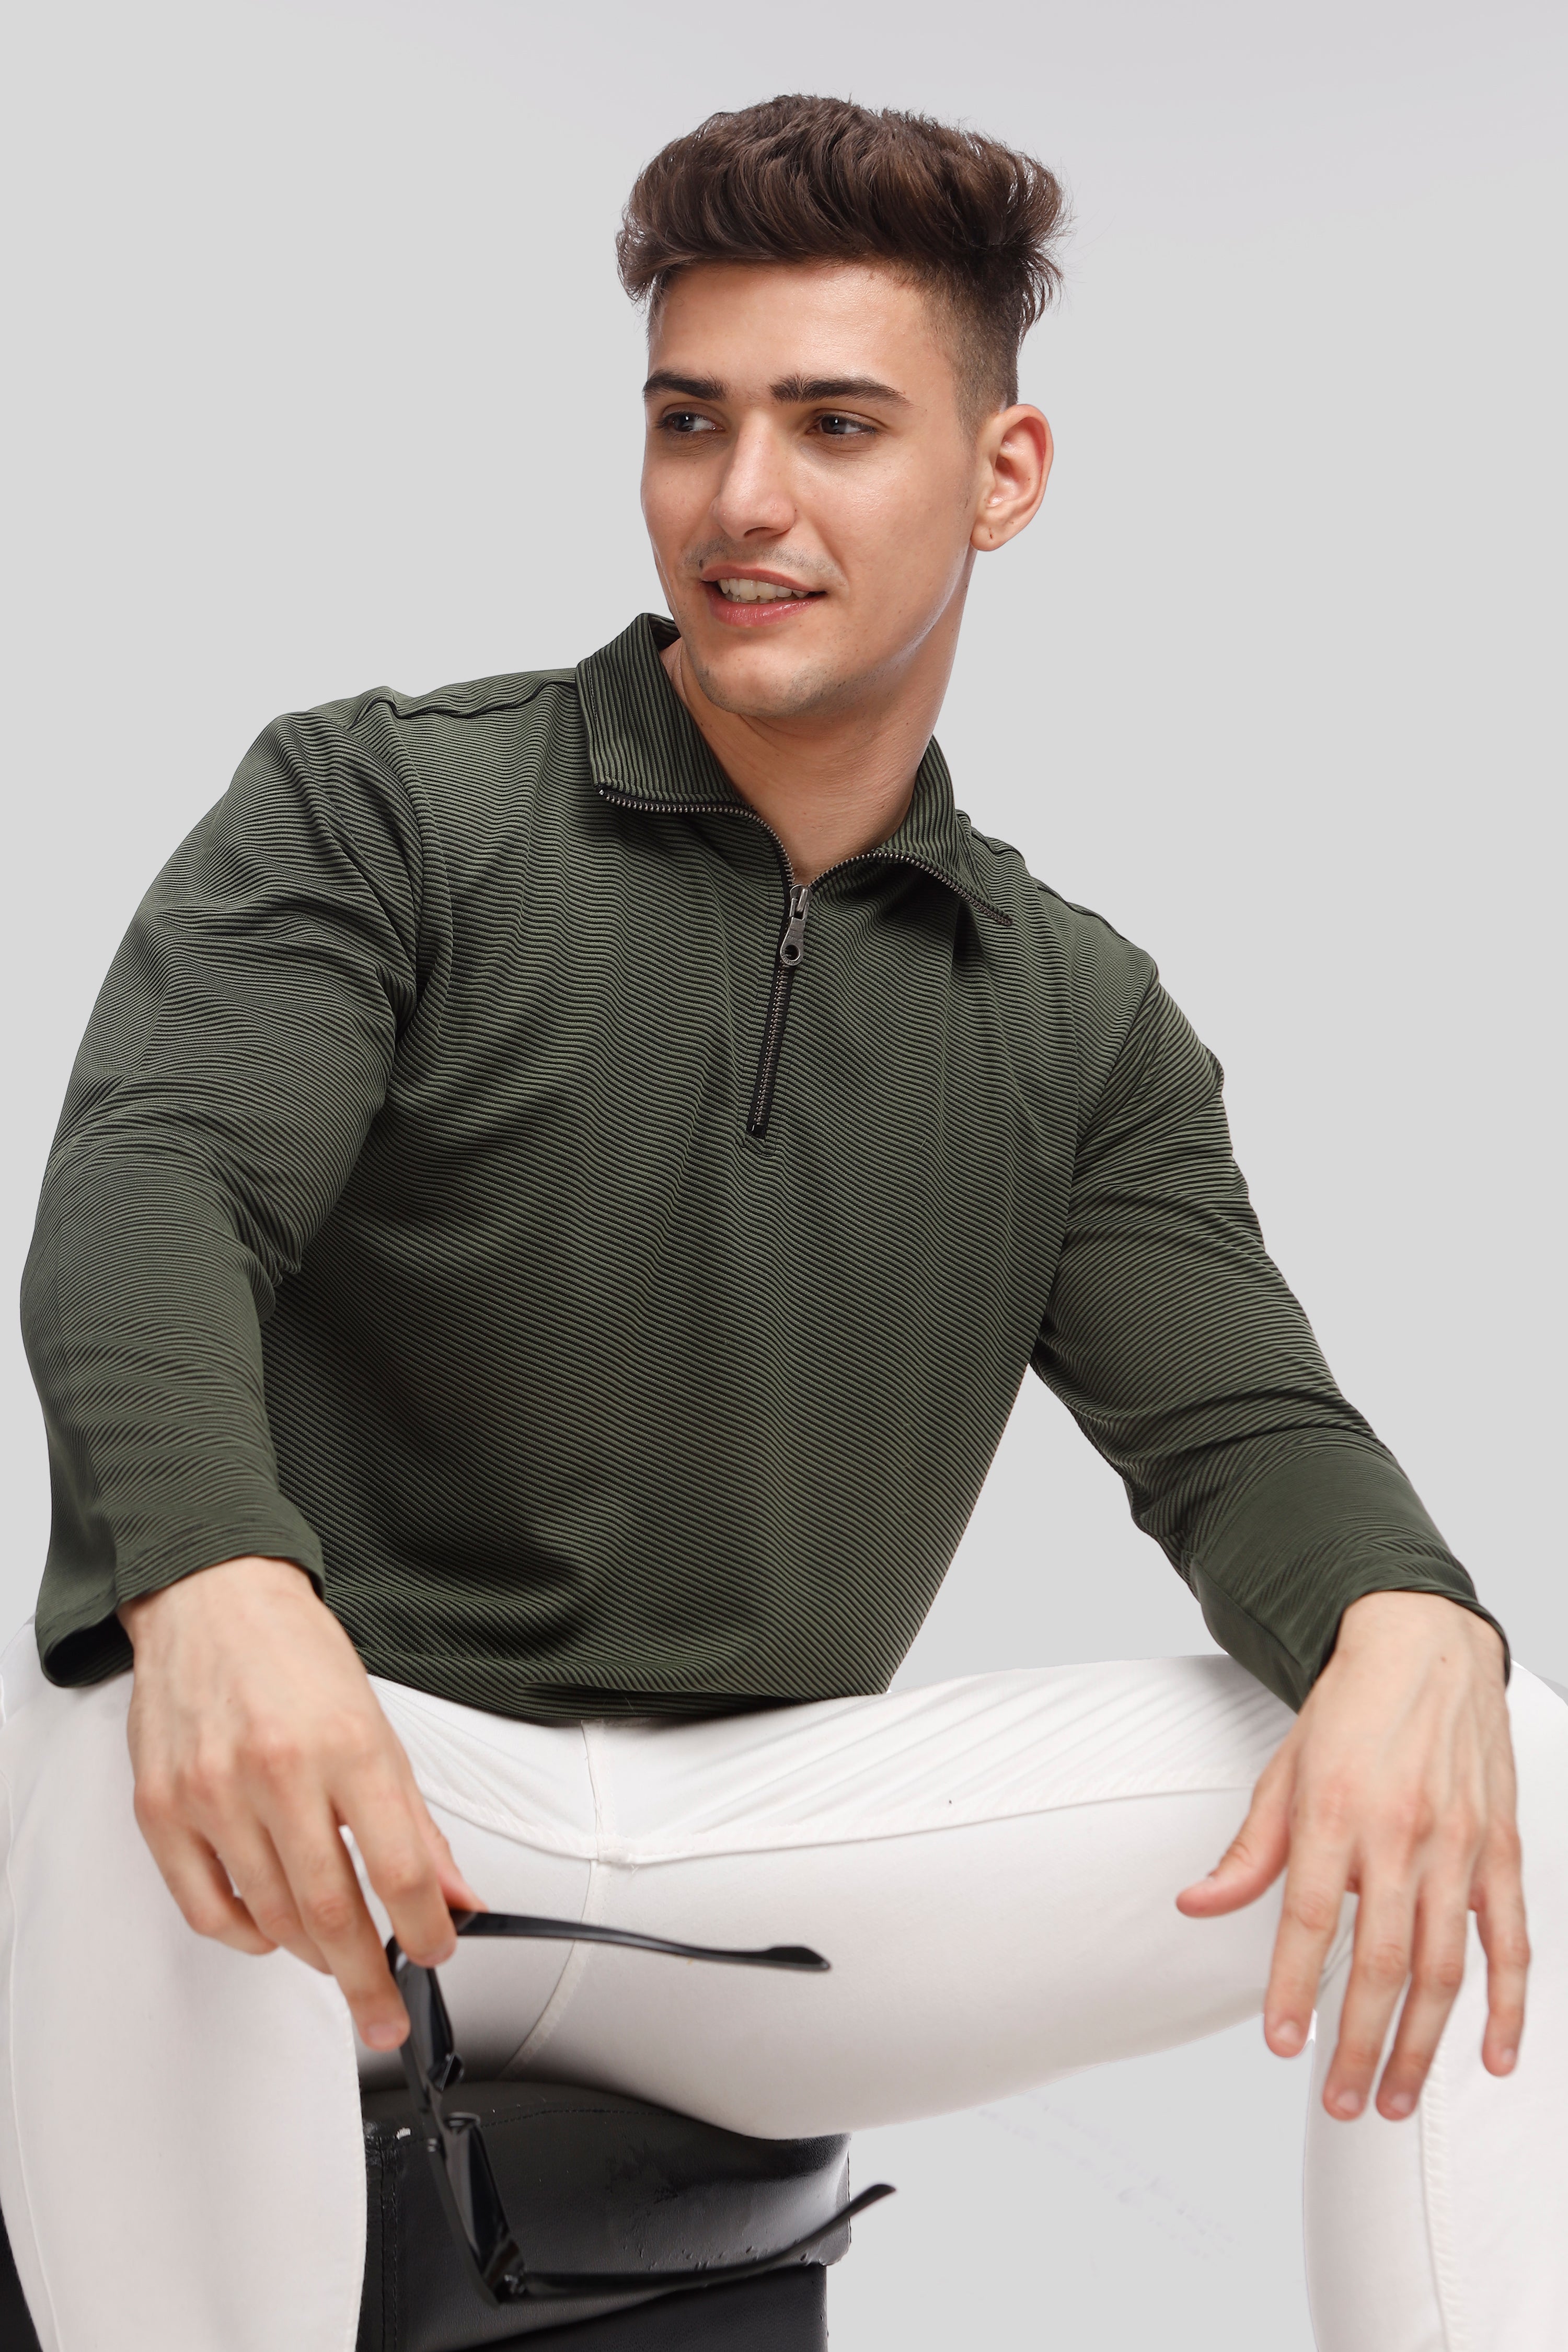 Green Stripes Self Design Zipper T-Shirt